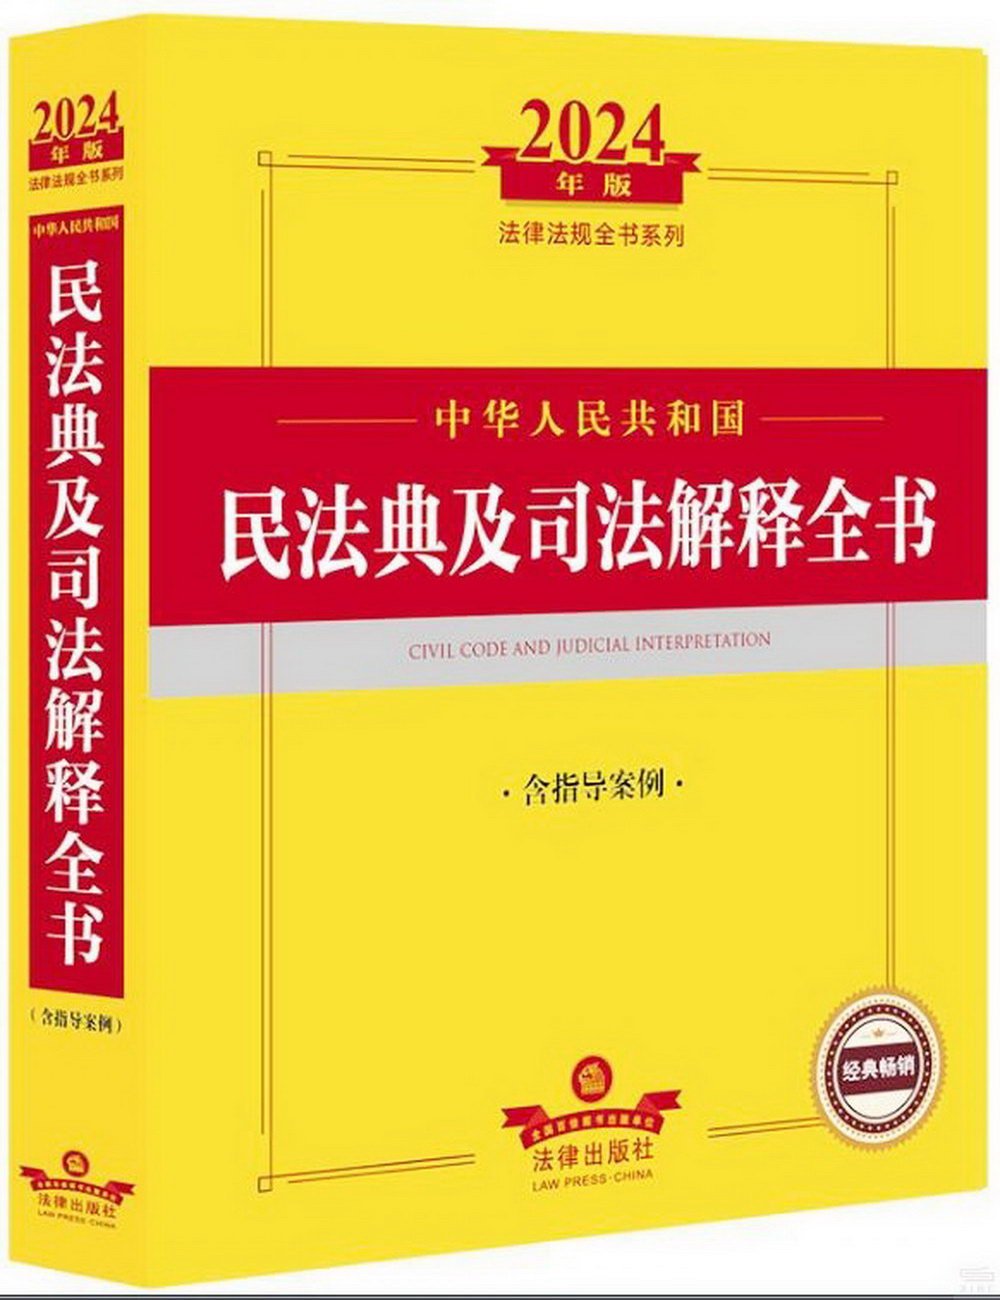 2024年版法律法規全書系列：中華人民共和國民法典及司法解釋全書（含指導案例）